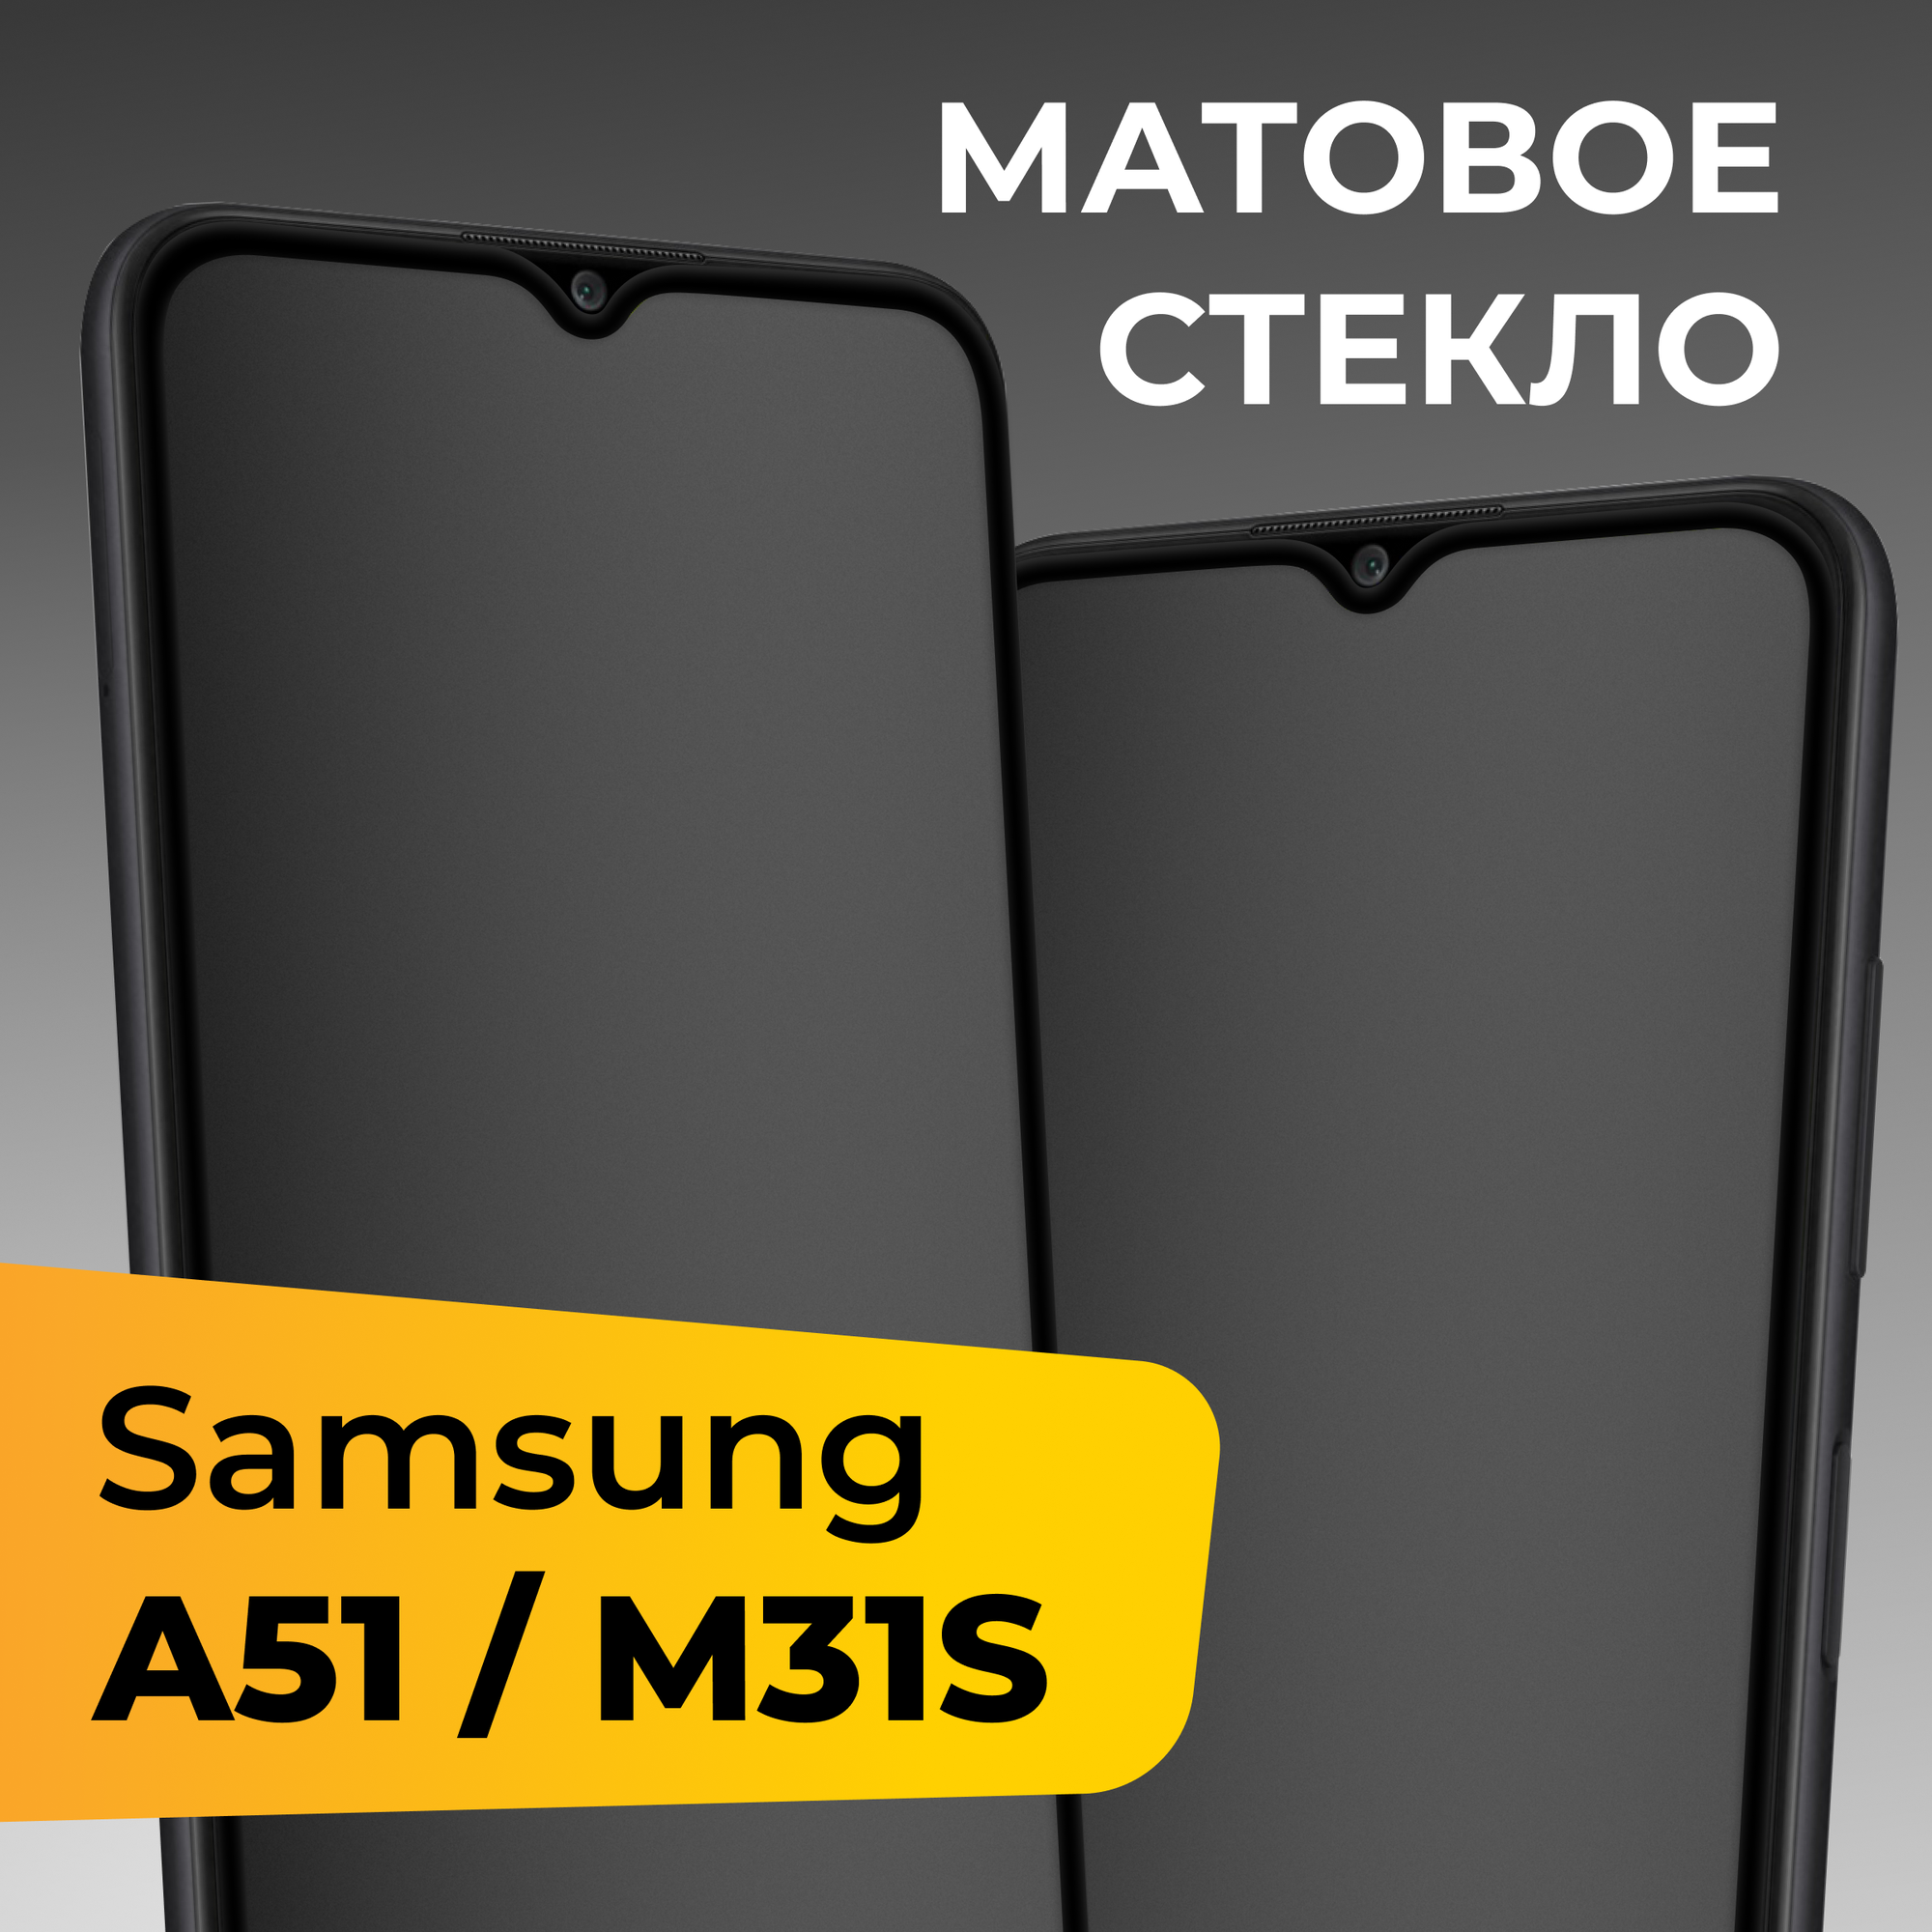 Матовое защитное стекло для телефона Samsung Galaxy A51 и M31S / Противоударное закаленное стекло для смартфона Самсунг Галакси А51 и М31С